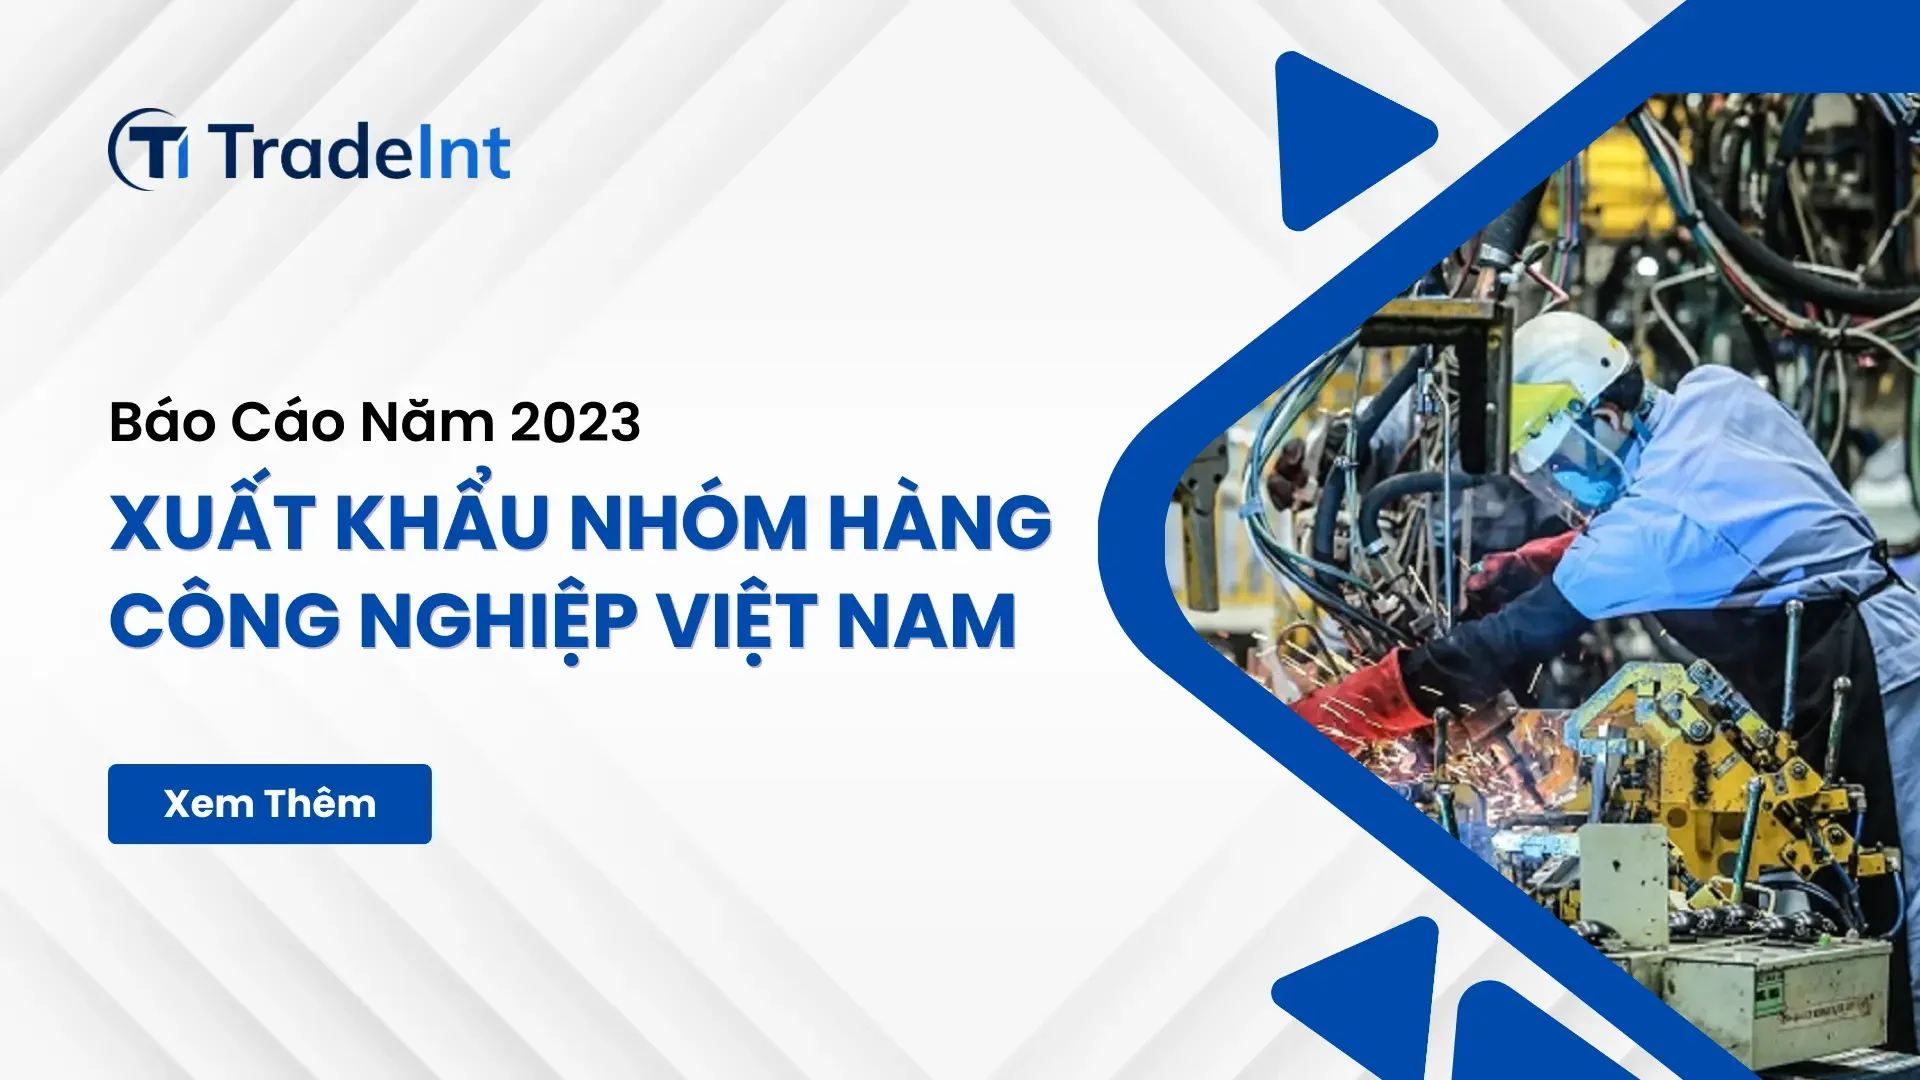 Xuất nhập khẩu nhóm hàng công nghiệp VIệt Nam 2023